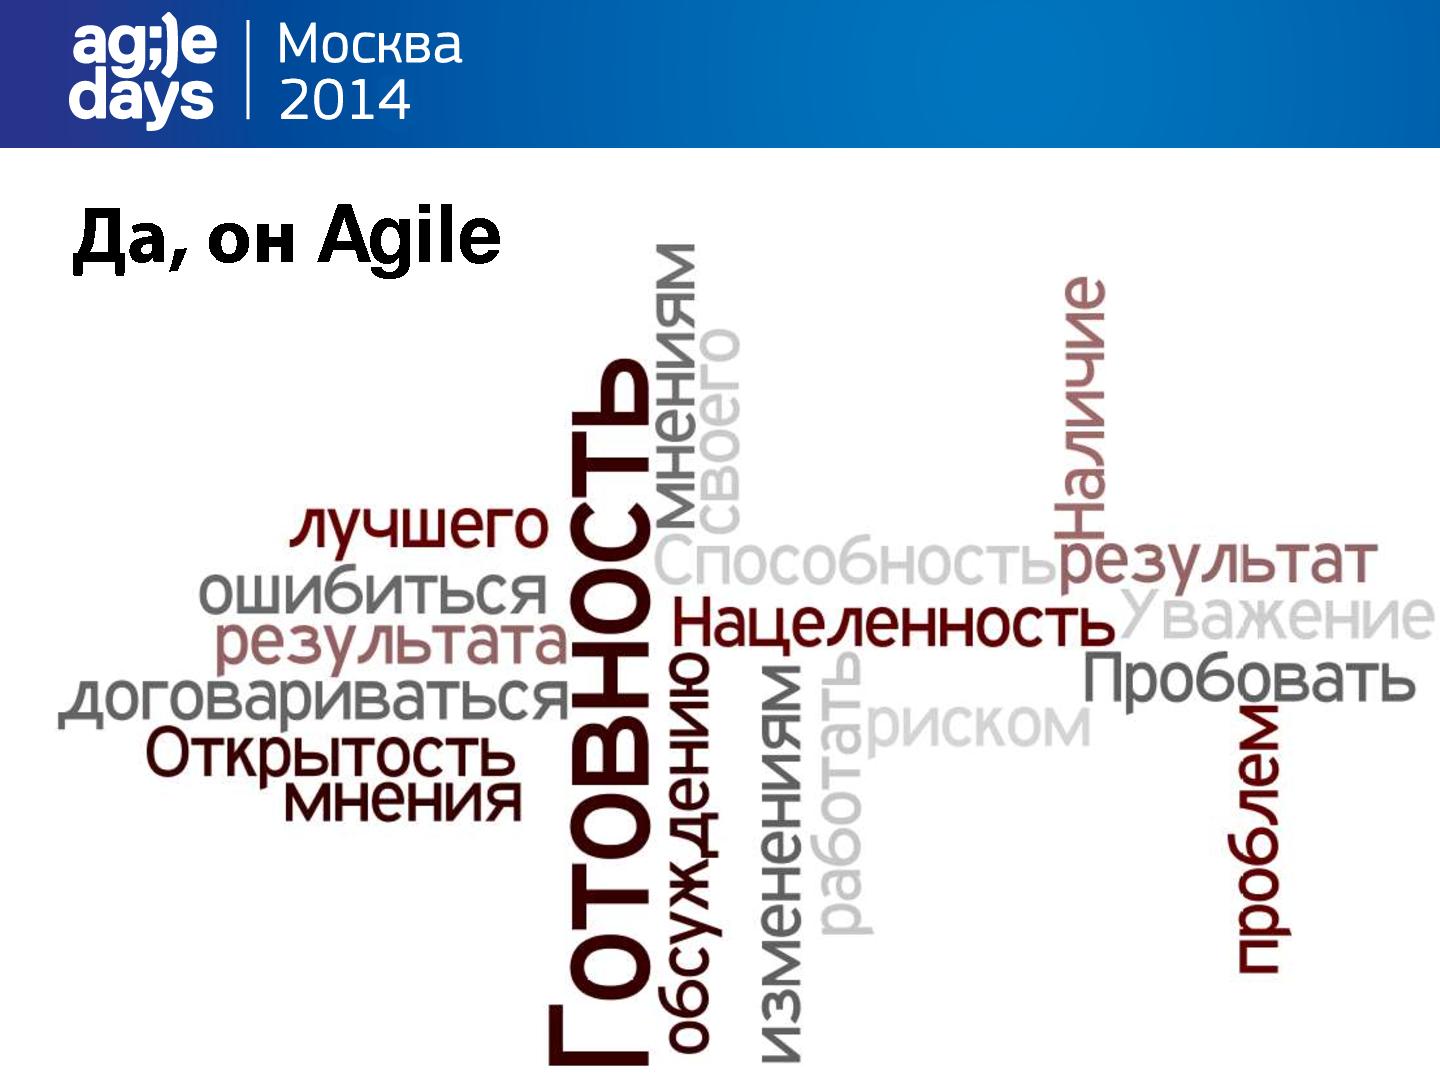 Файл:Высший пилотаж изменений - меняем Mindset в Agile сторону (Анна Обухова, AgileDays-2014).pdf